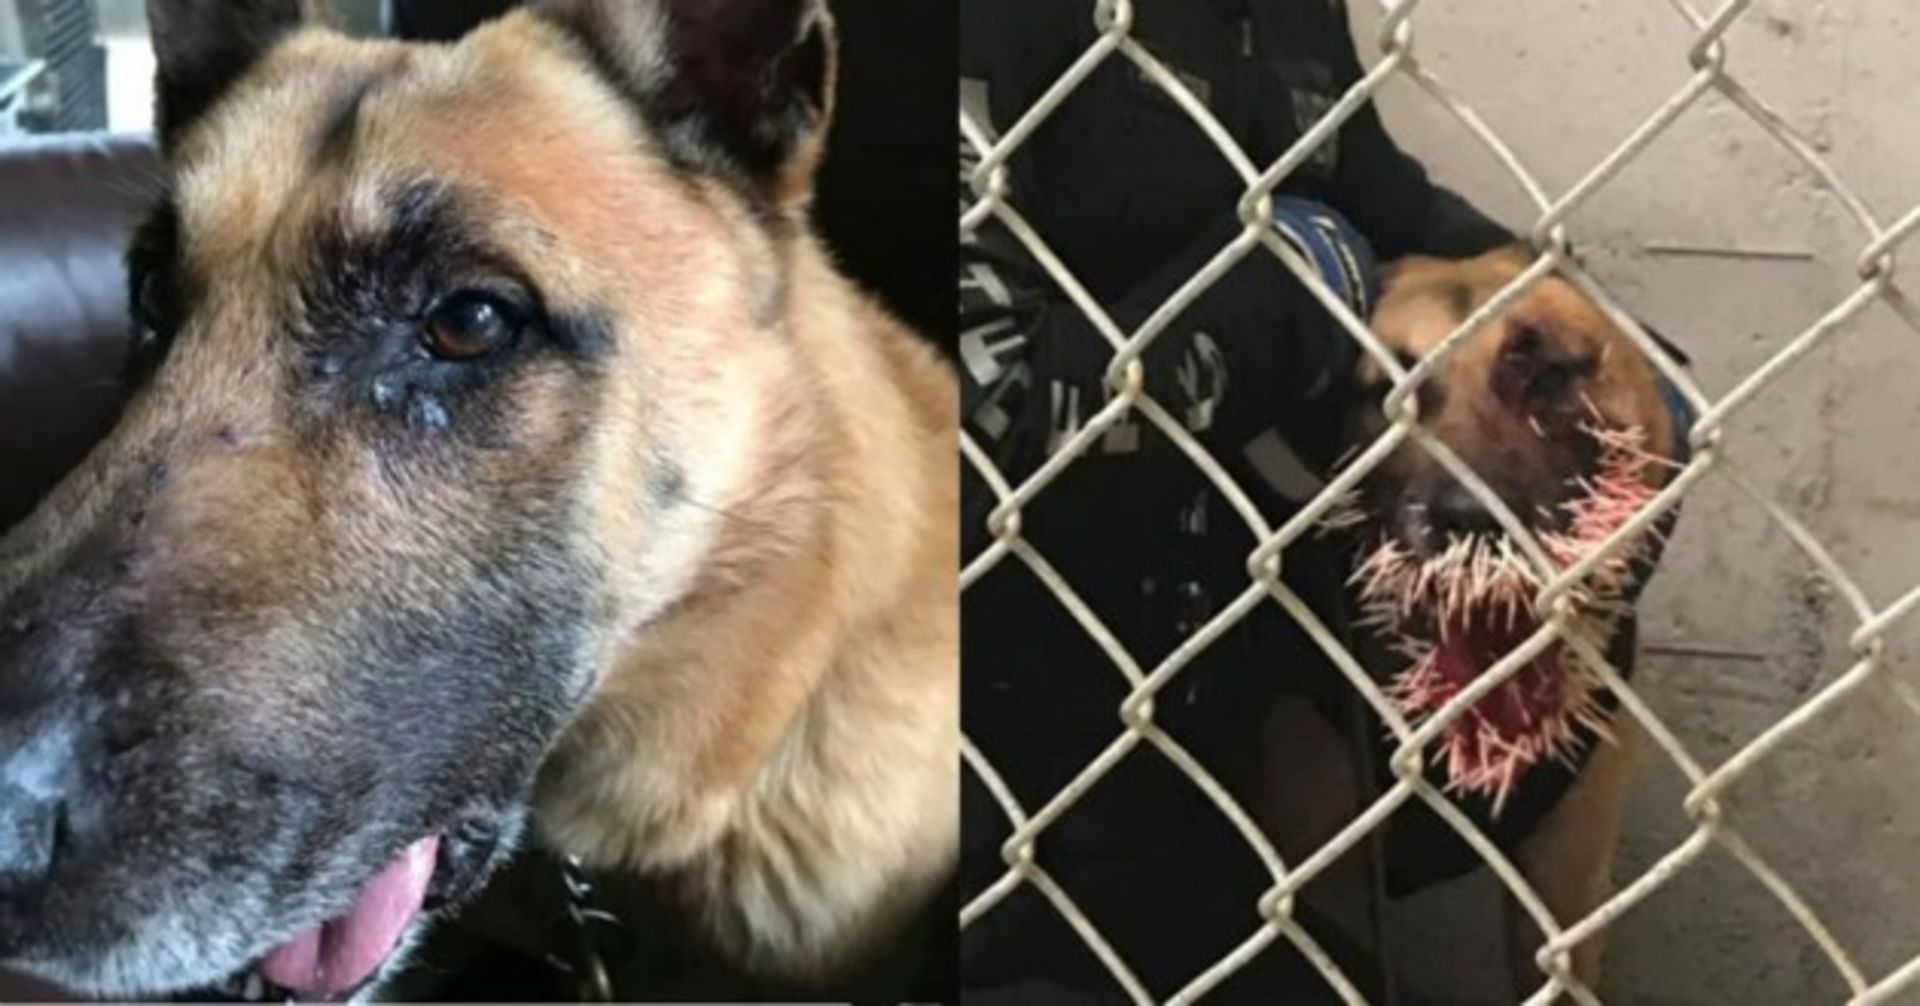 Polizei im Einsatz: Schäferhund schnappt nach Täter und zahlt einen harten Preis